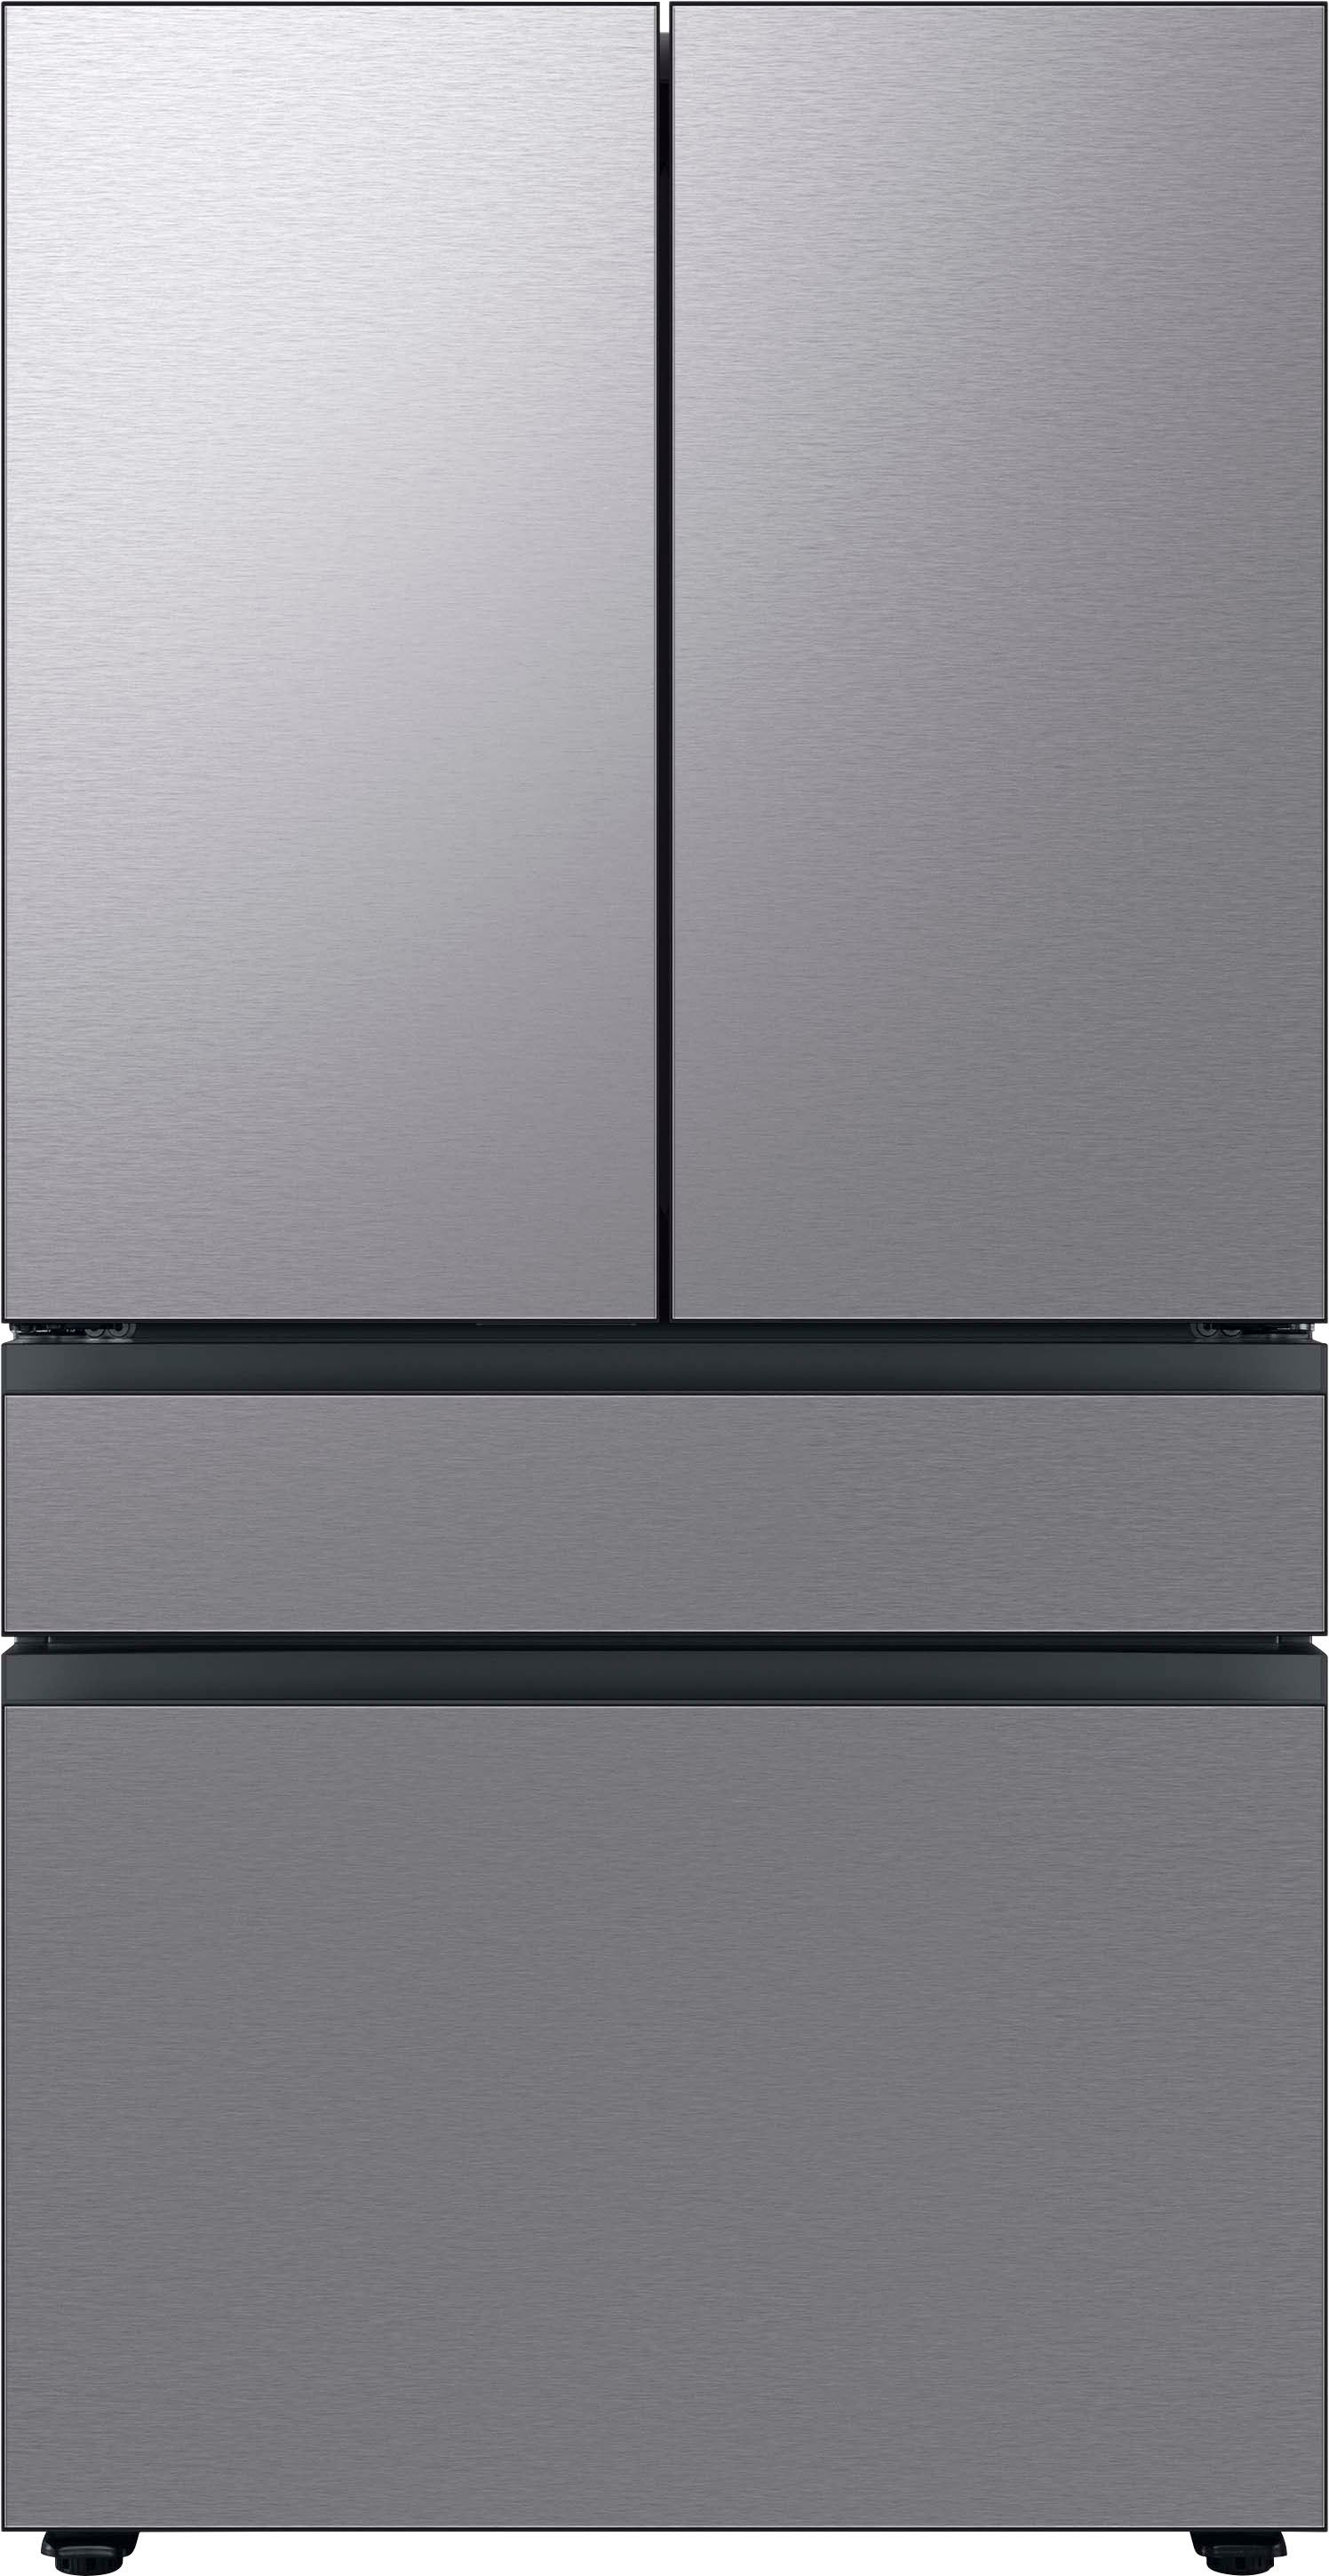 Samsung BESPOKE 29 cu. ft. 4-Door French Door Smart Refrigerator with Beverage Center Stainless S... | Best Buy U.S.